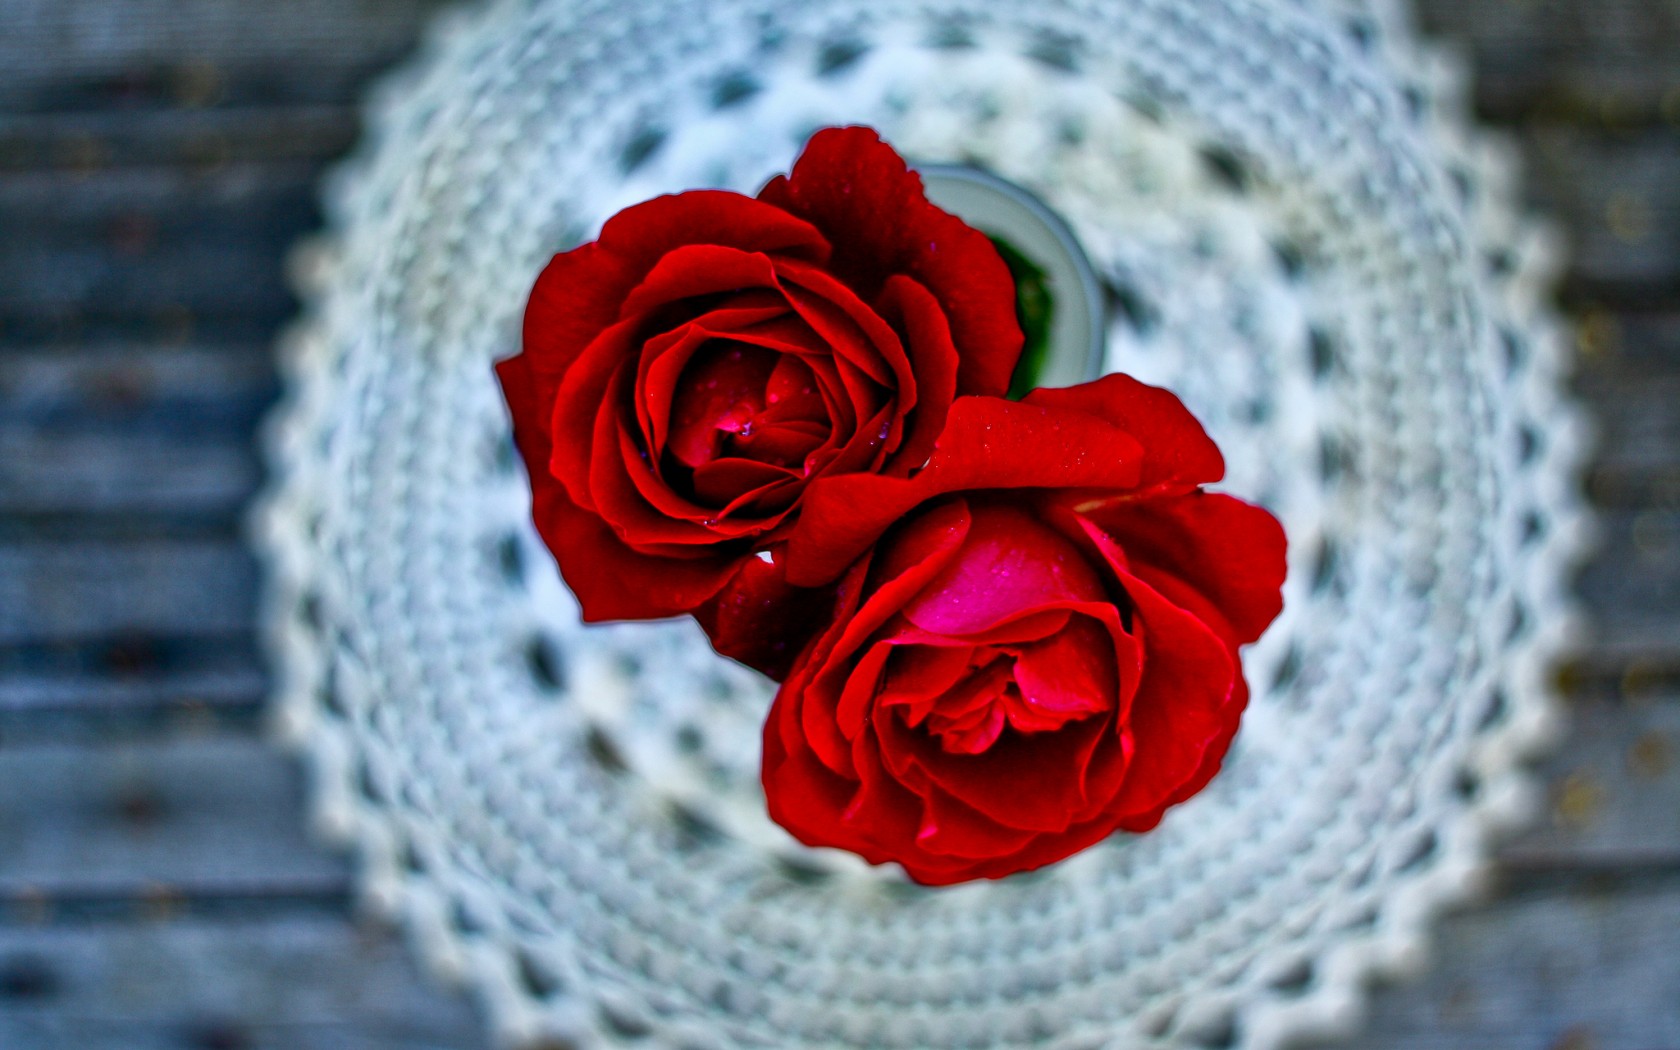 beautiful red rose wallpaper download